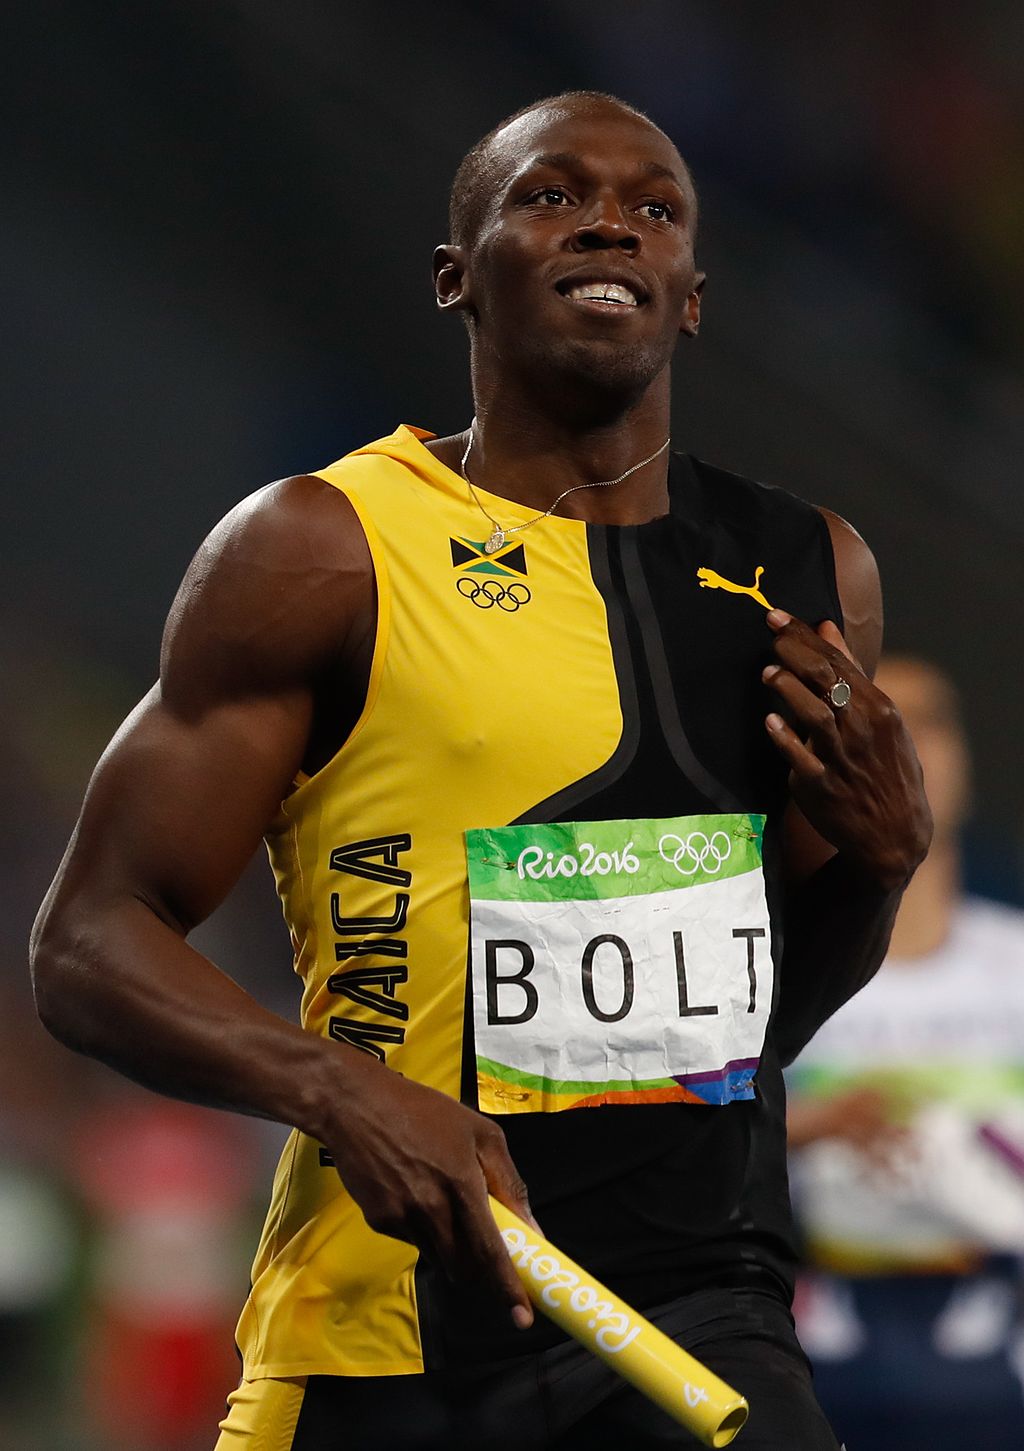 Usain Bolt a muscular ectomorph